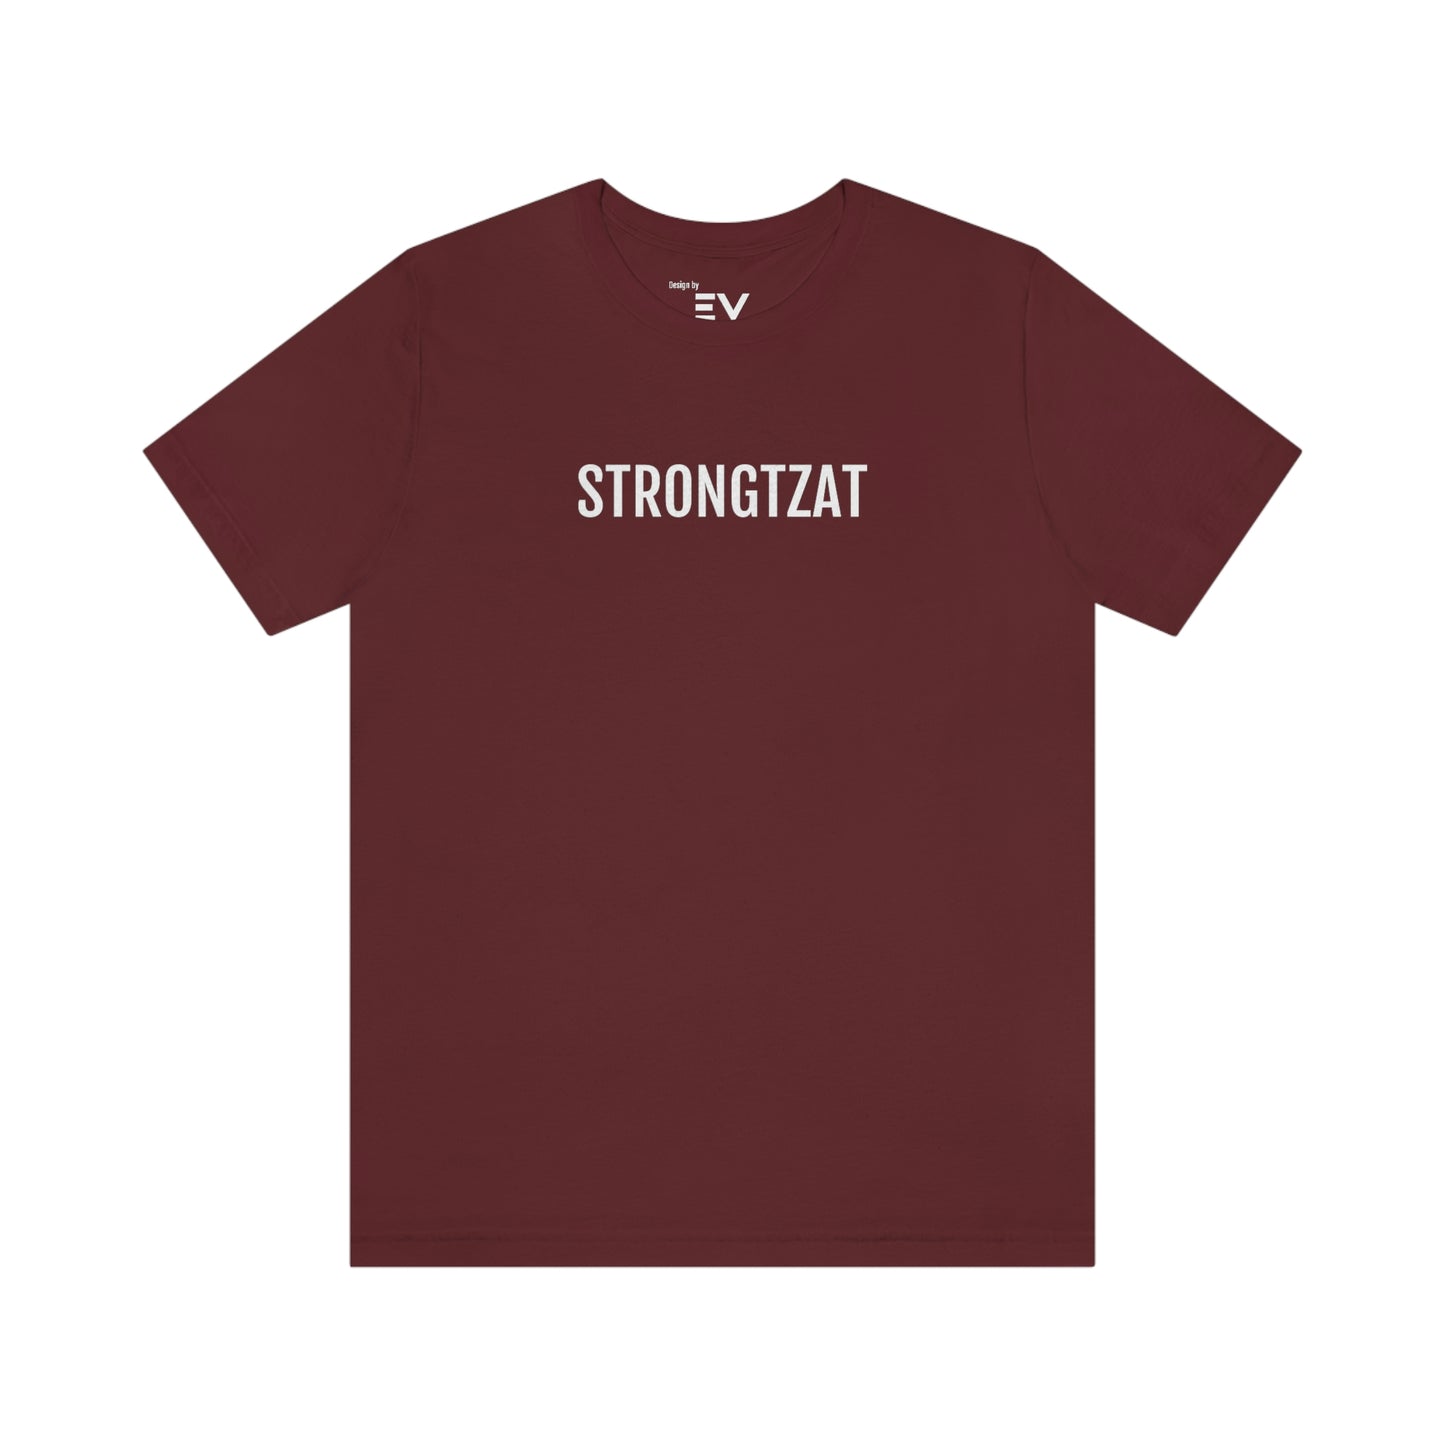 Strongtzat | Unisex T-Shirt uit Oost-Vlaanderen - Rood